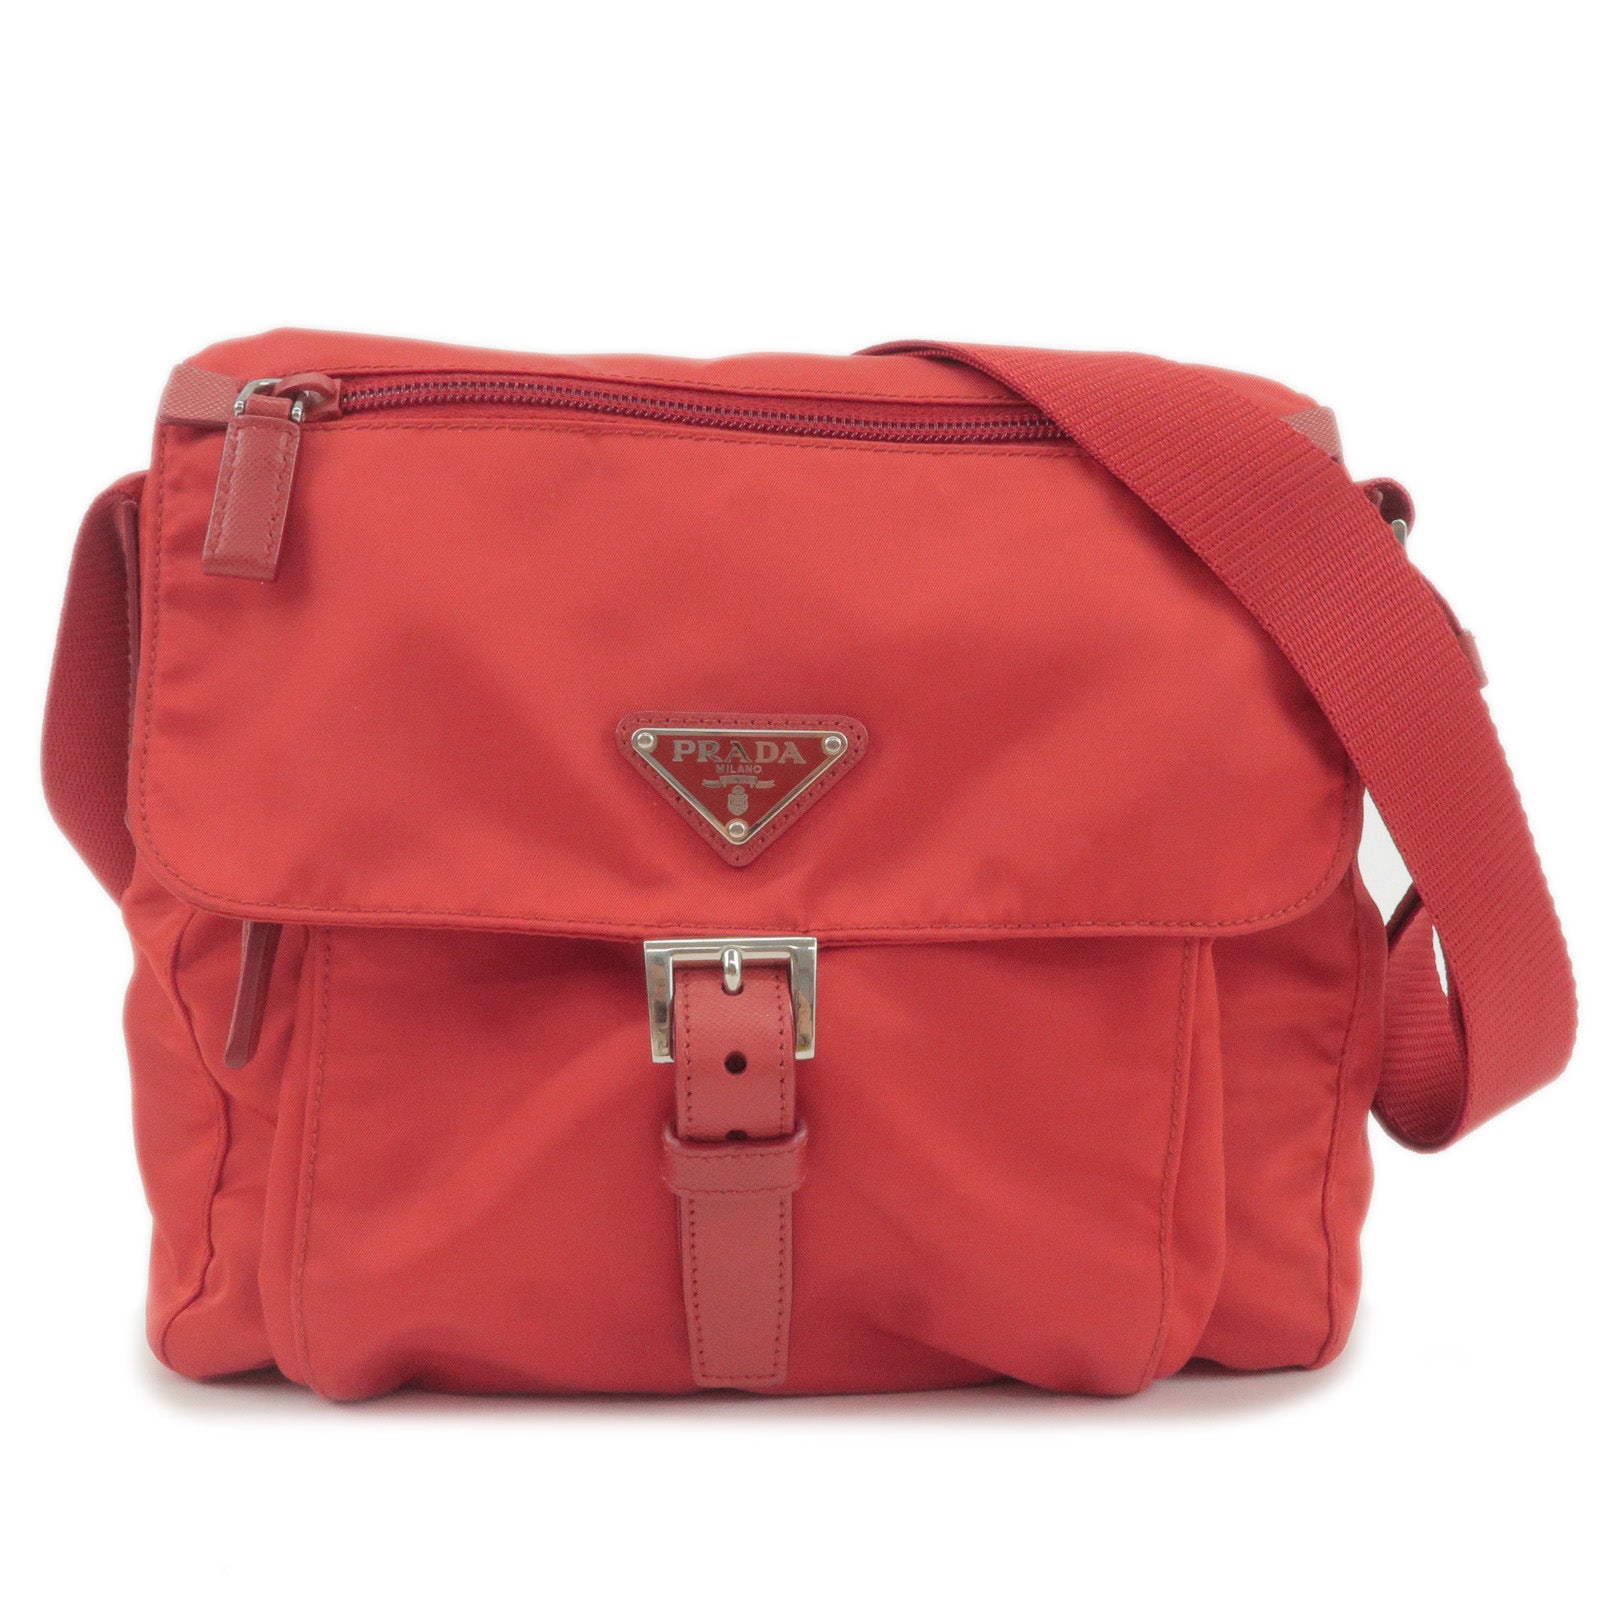 Prada Pink Saffiano Leather Crossbody Bag Prada